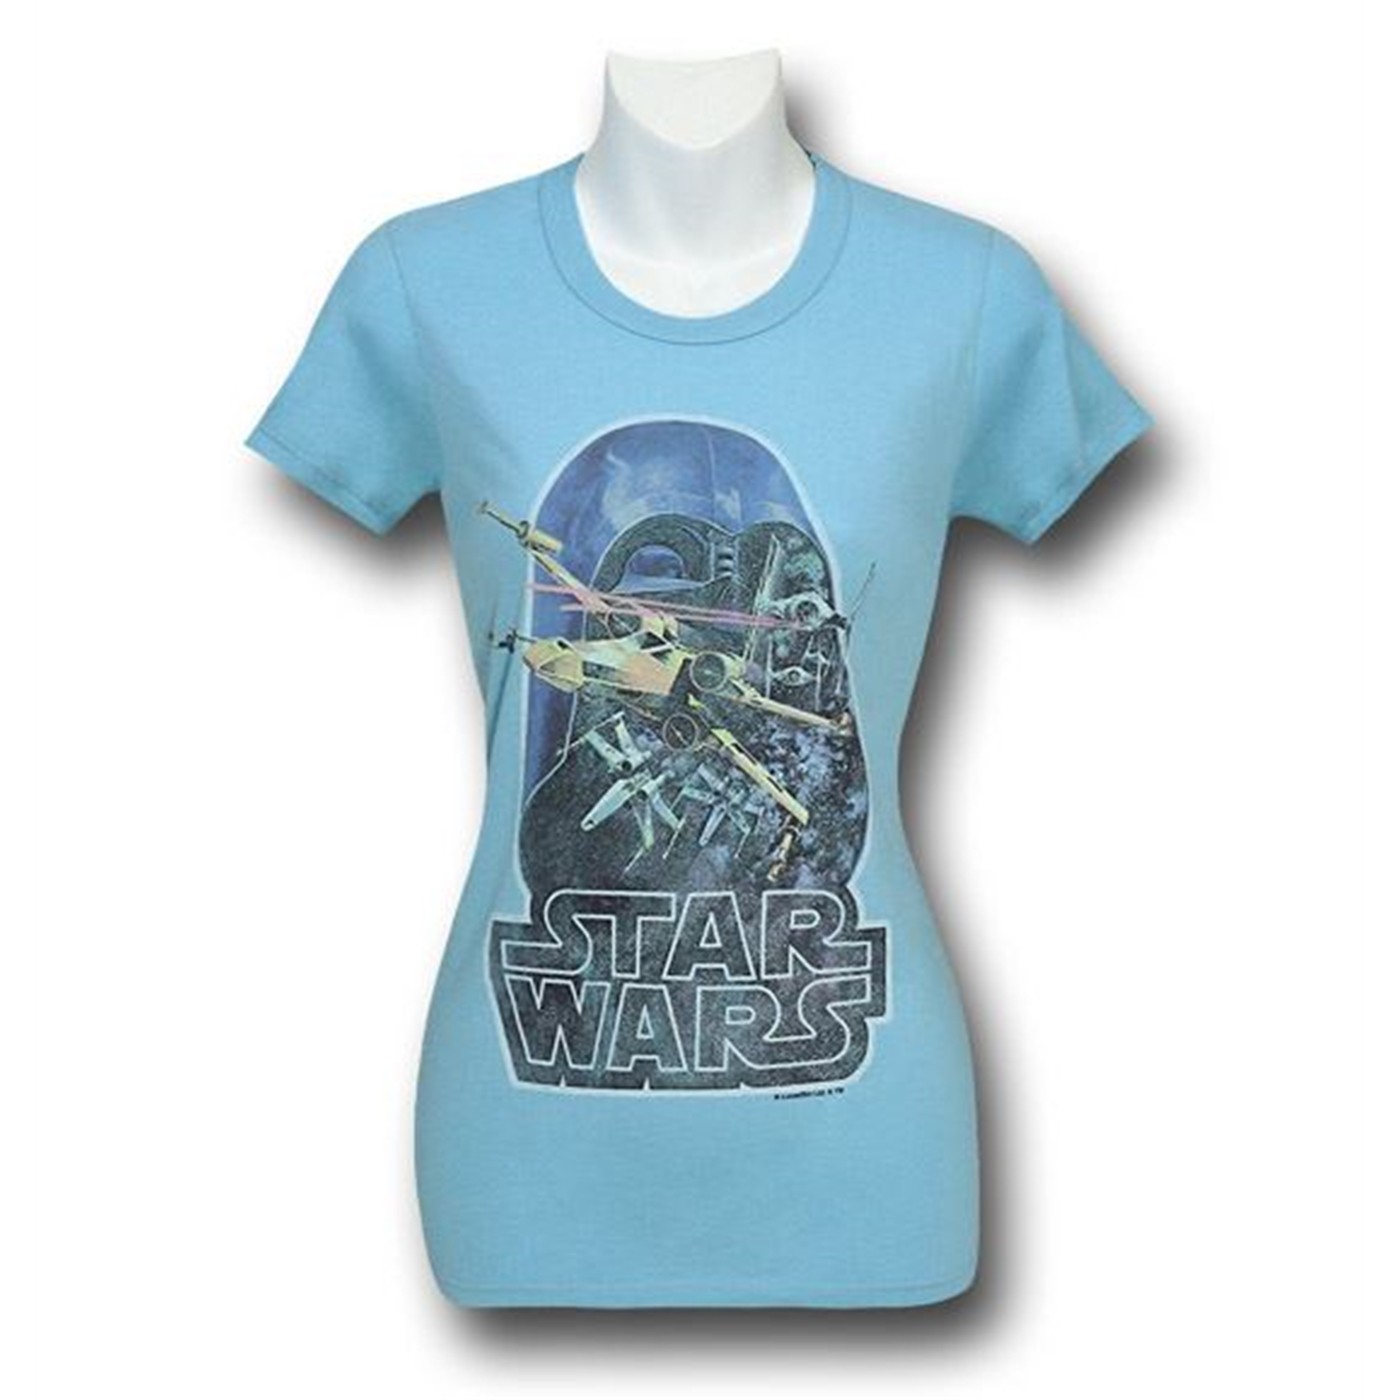 Star Wars Retro Poster Jr Womens Junk Food T-Shirt